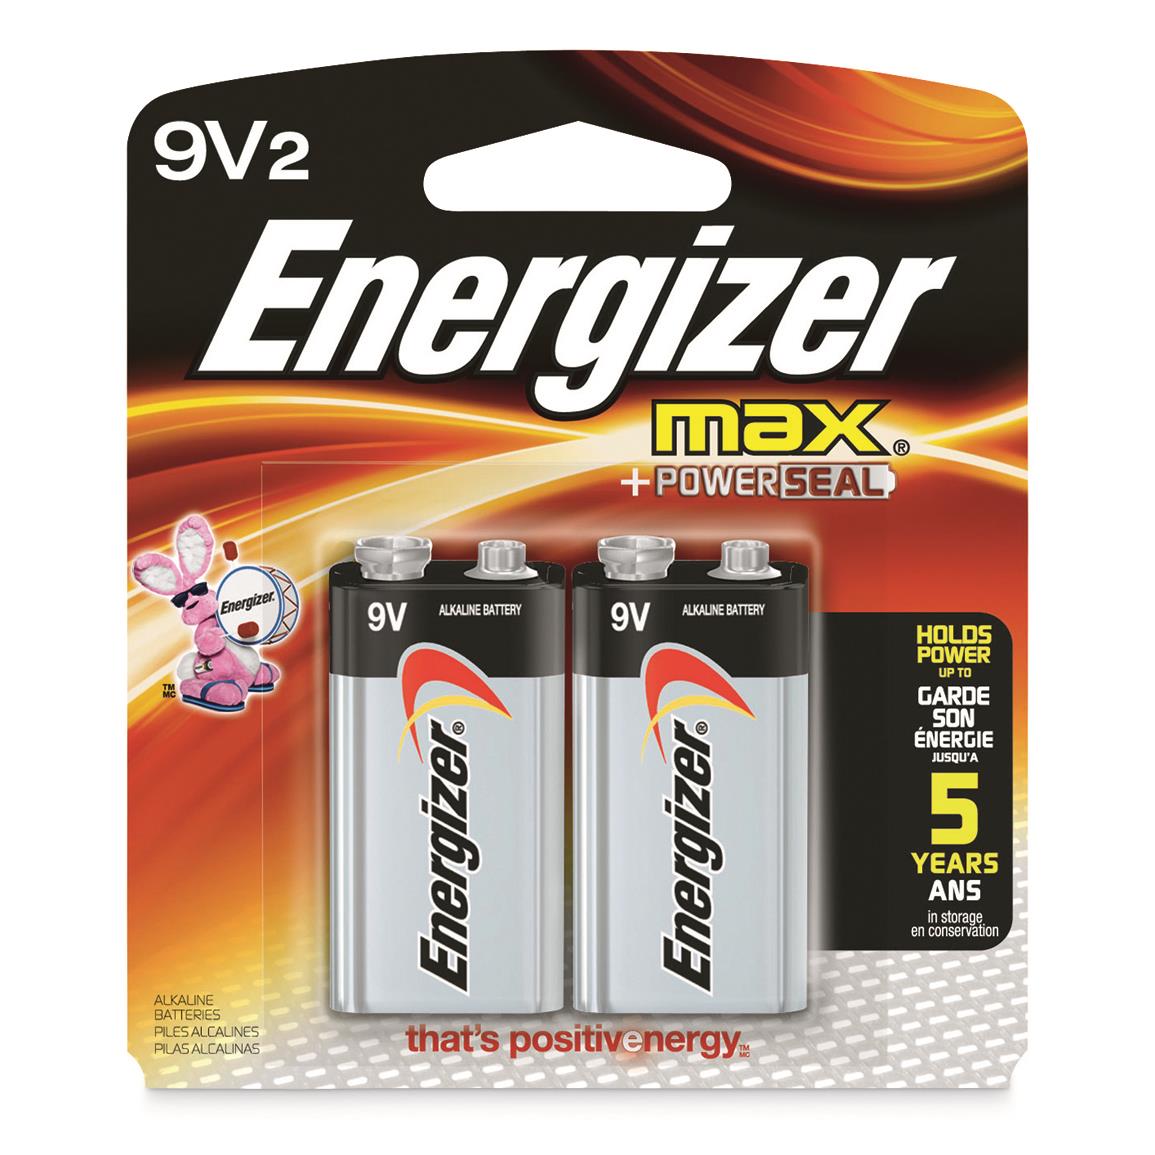 Energizer MAX Alkaline 9V Batteries, 2 Pack